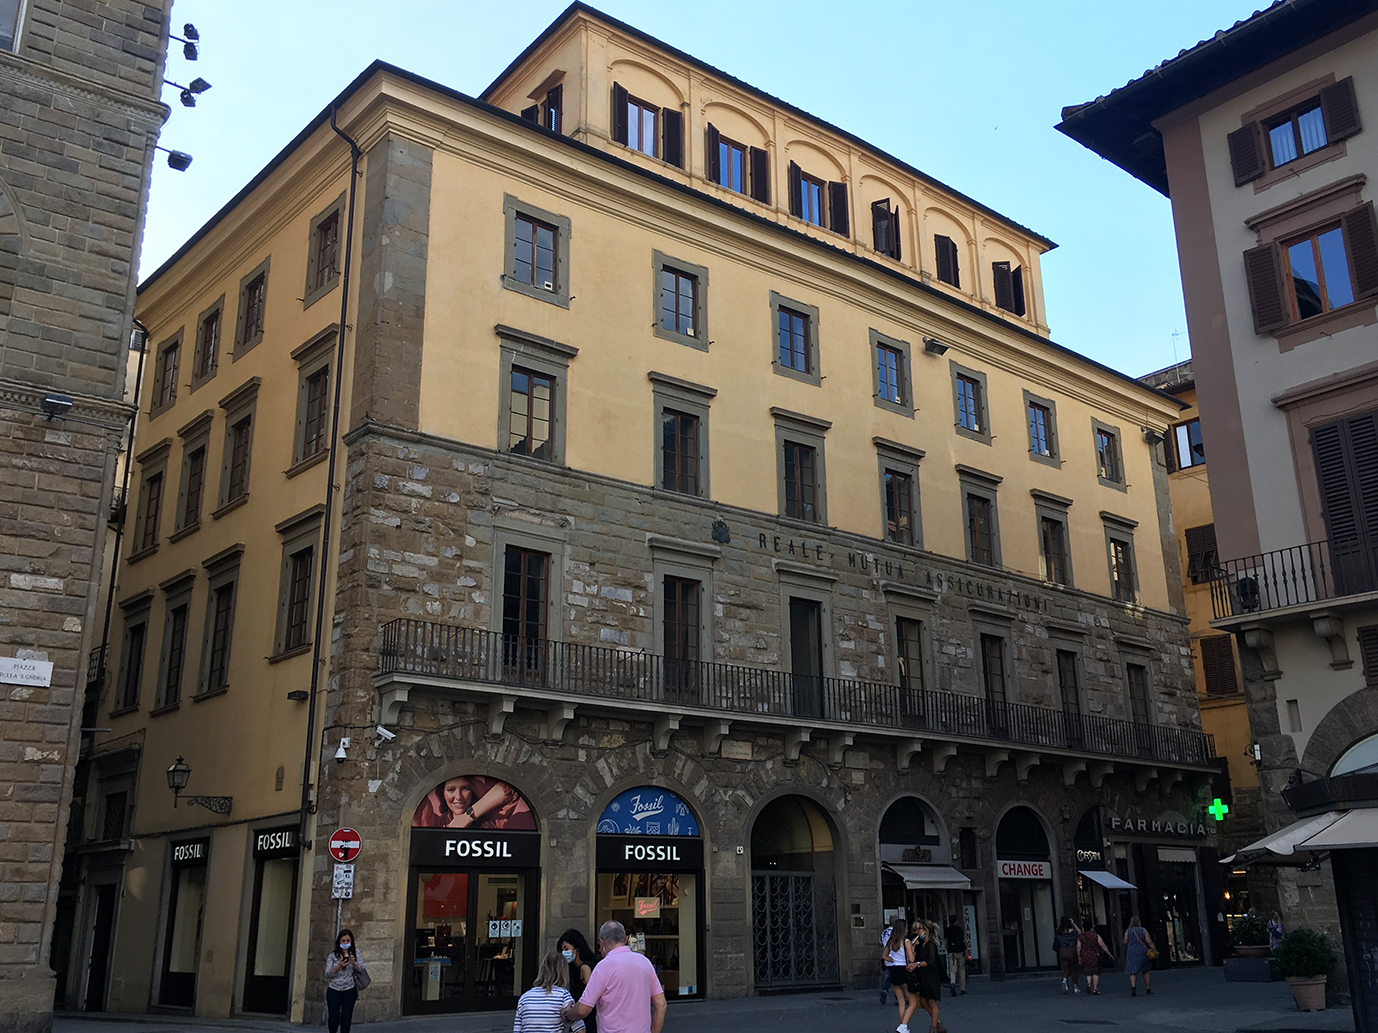 Farmacia Molteni (farmacia, pubblica) - Firenze (FI) 